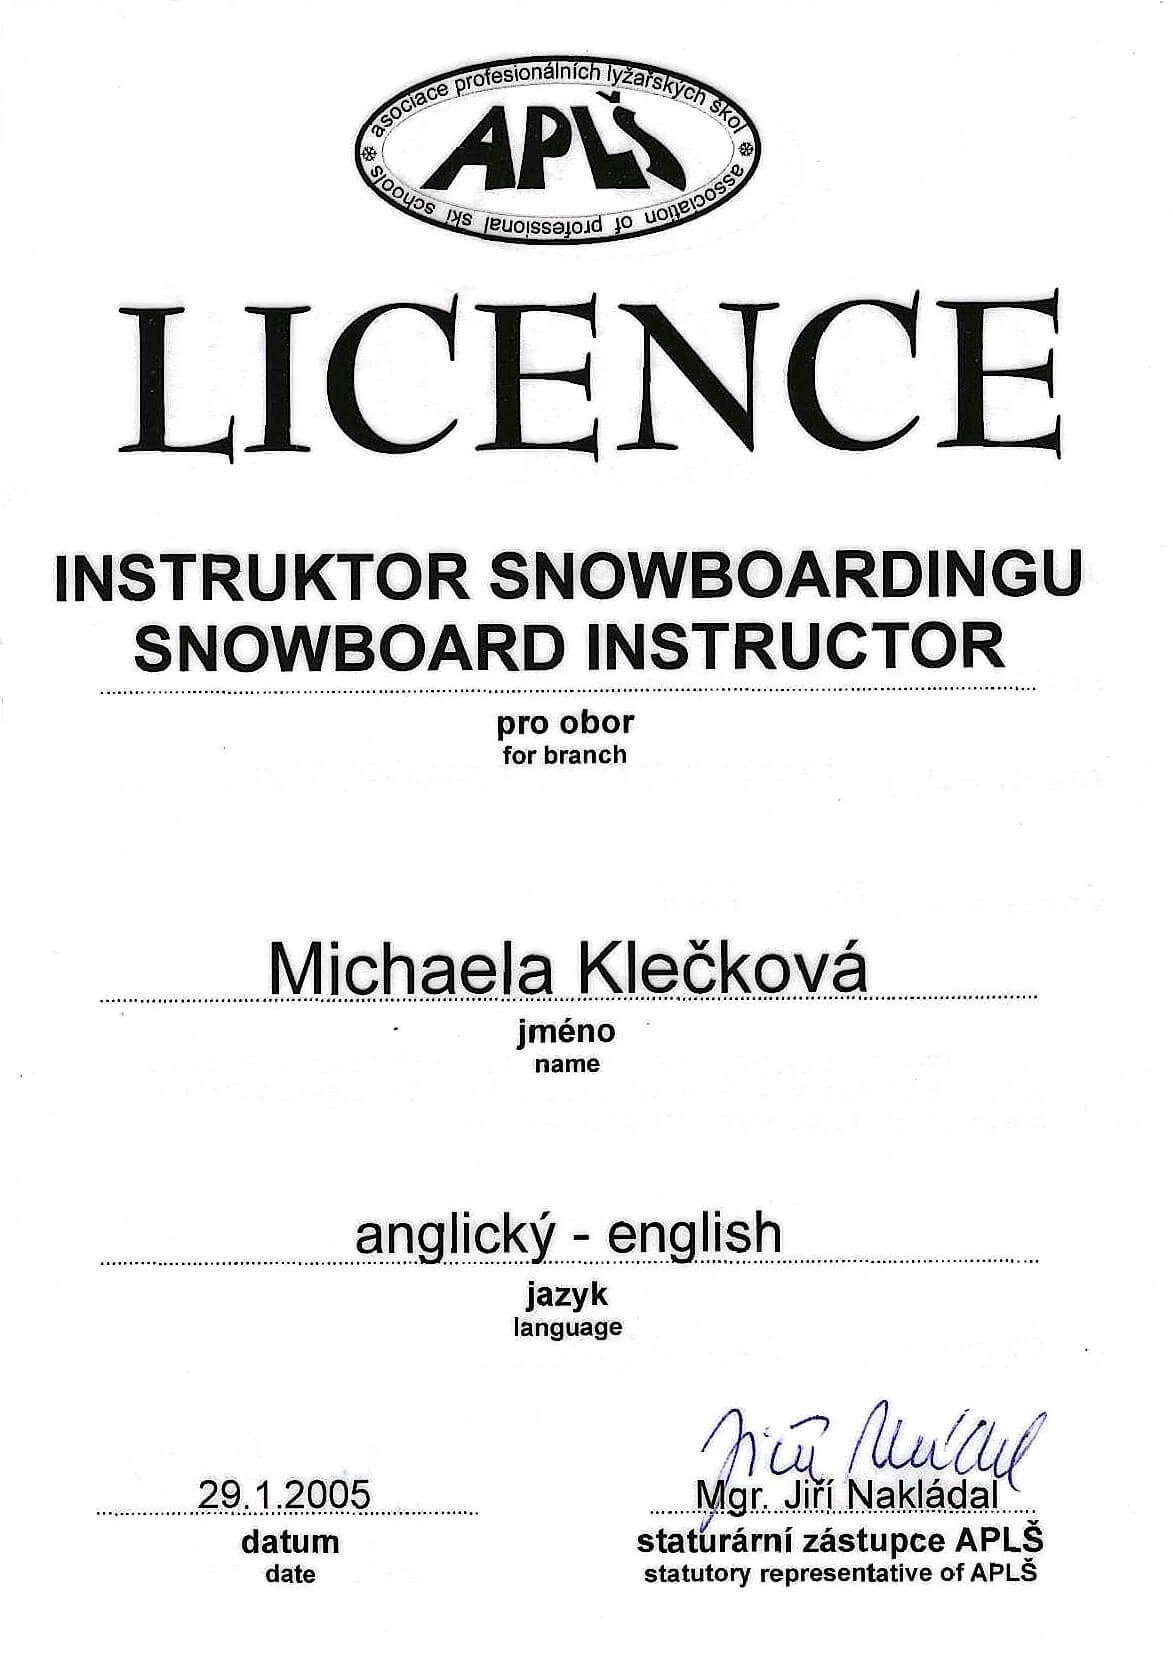 Instruktor snowboardingu - Mgr. Michaela Hrdličková Klečková